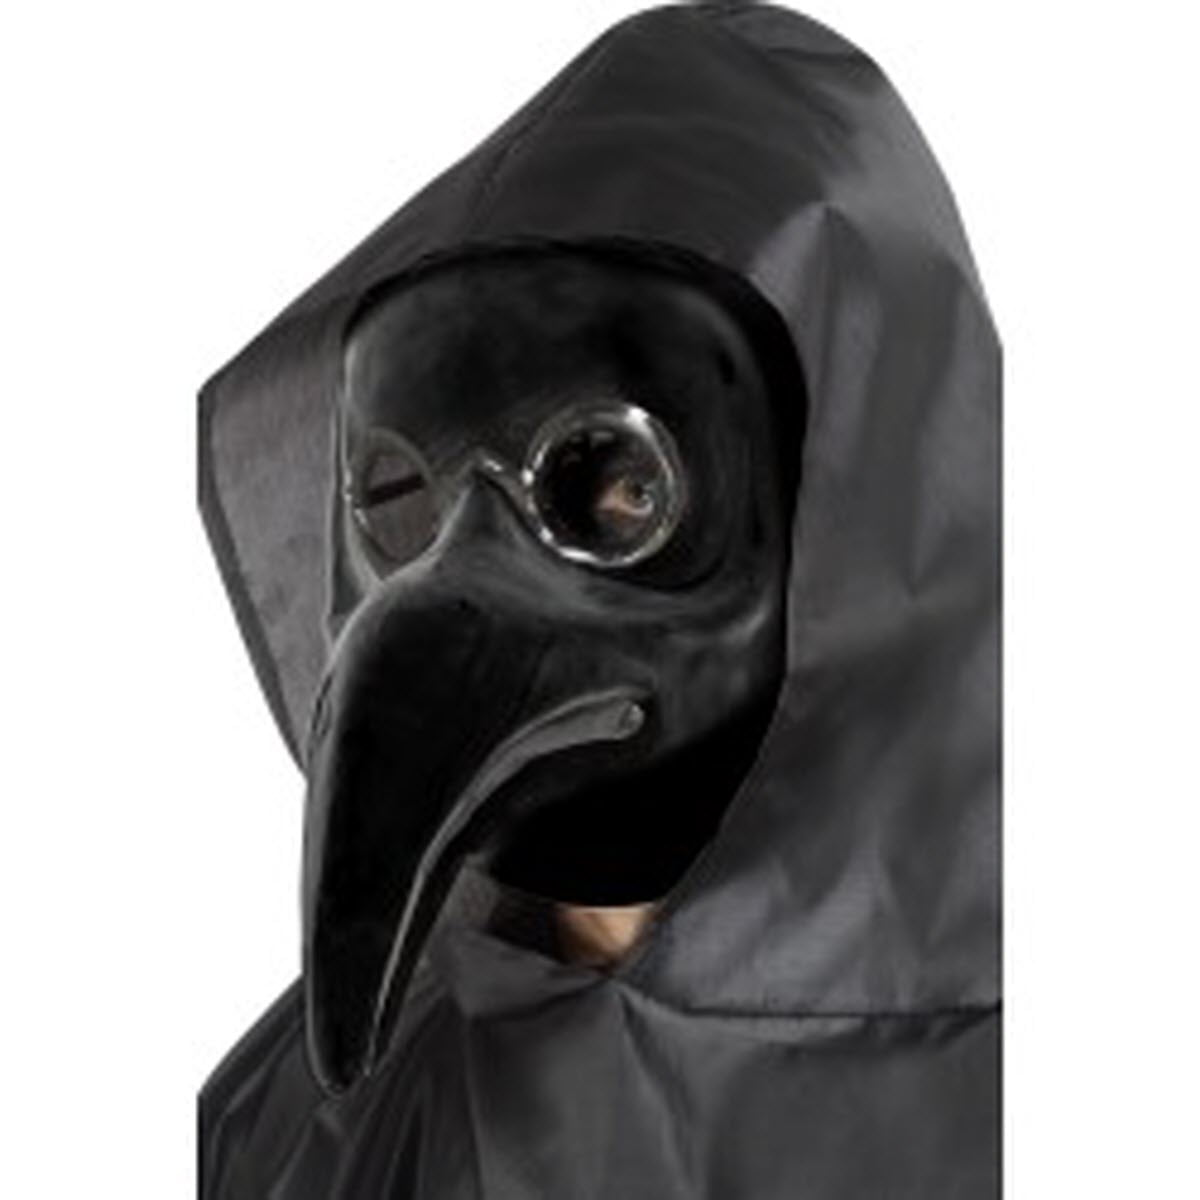 Long Nose Bird Venetian Plague Doctor Masquerade Ball Halloween Mask Black